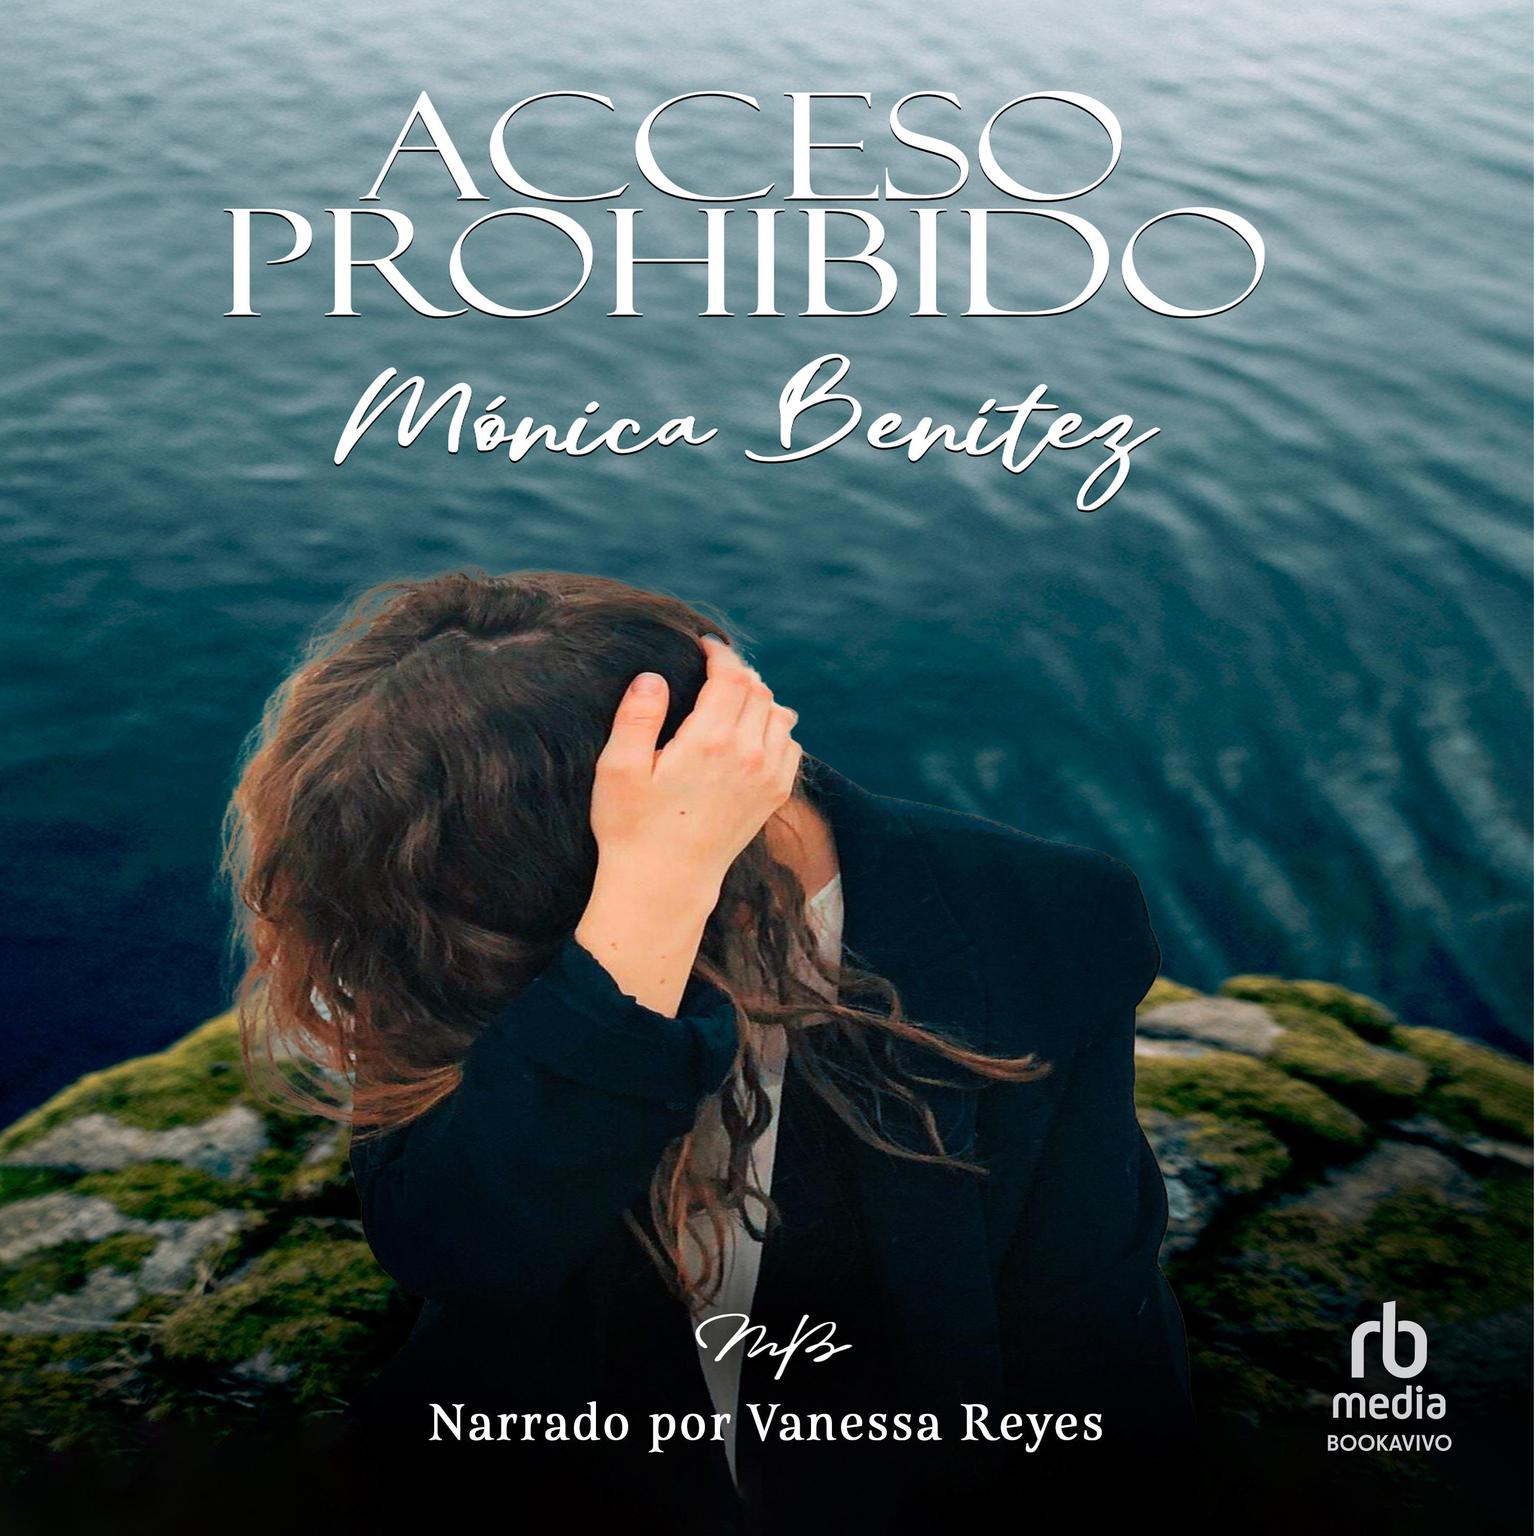 Acceso prohibido Audiobook, by Monica Benitez